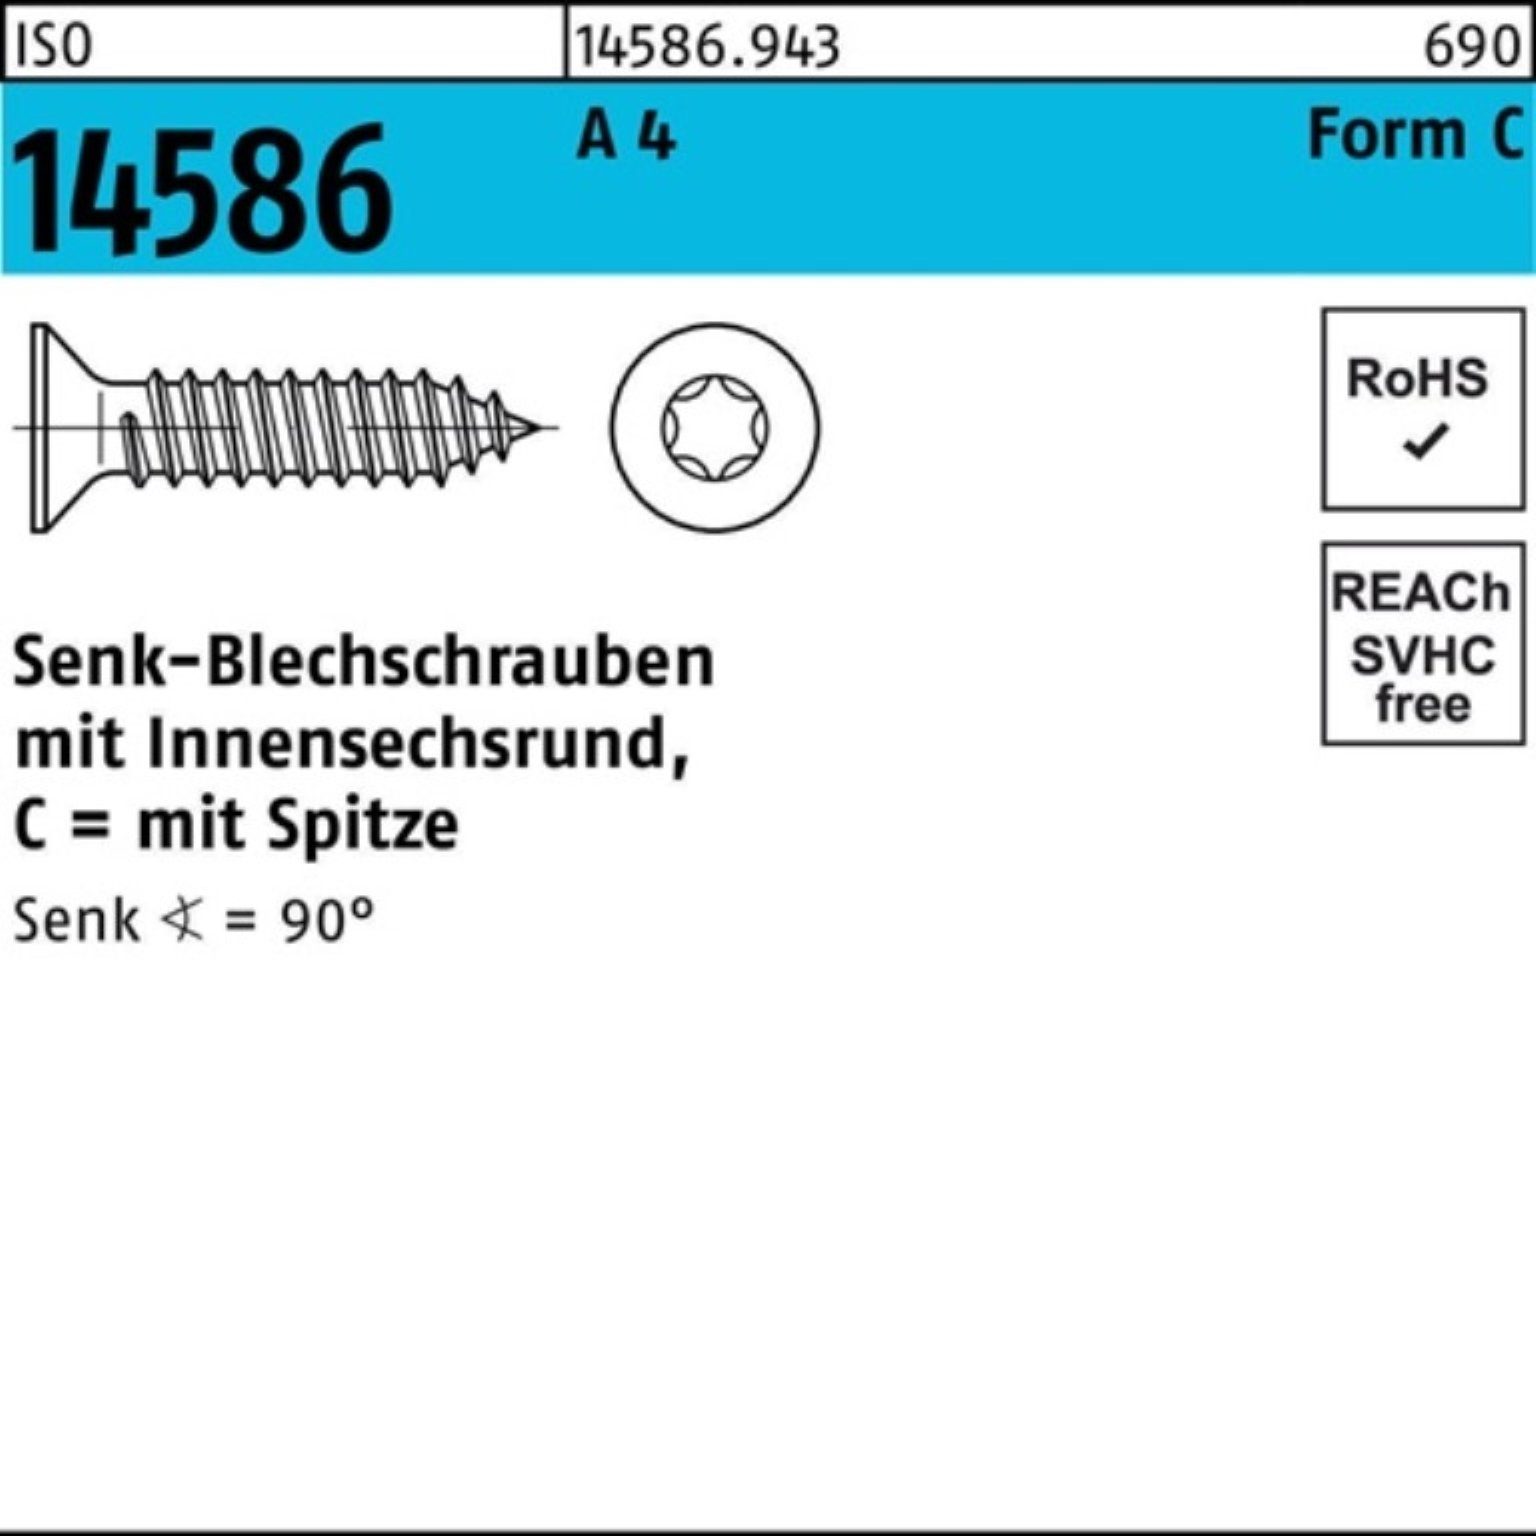 Reyher Schraube 1000er Pack Senkblechschraube ISO 14586 ISR/Spitze 2,9x 19-T10 A 4 100